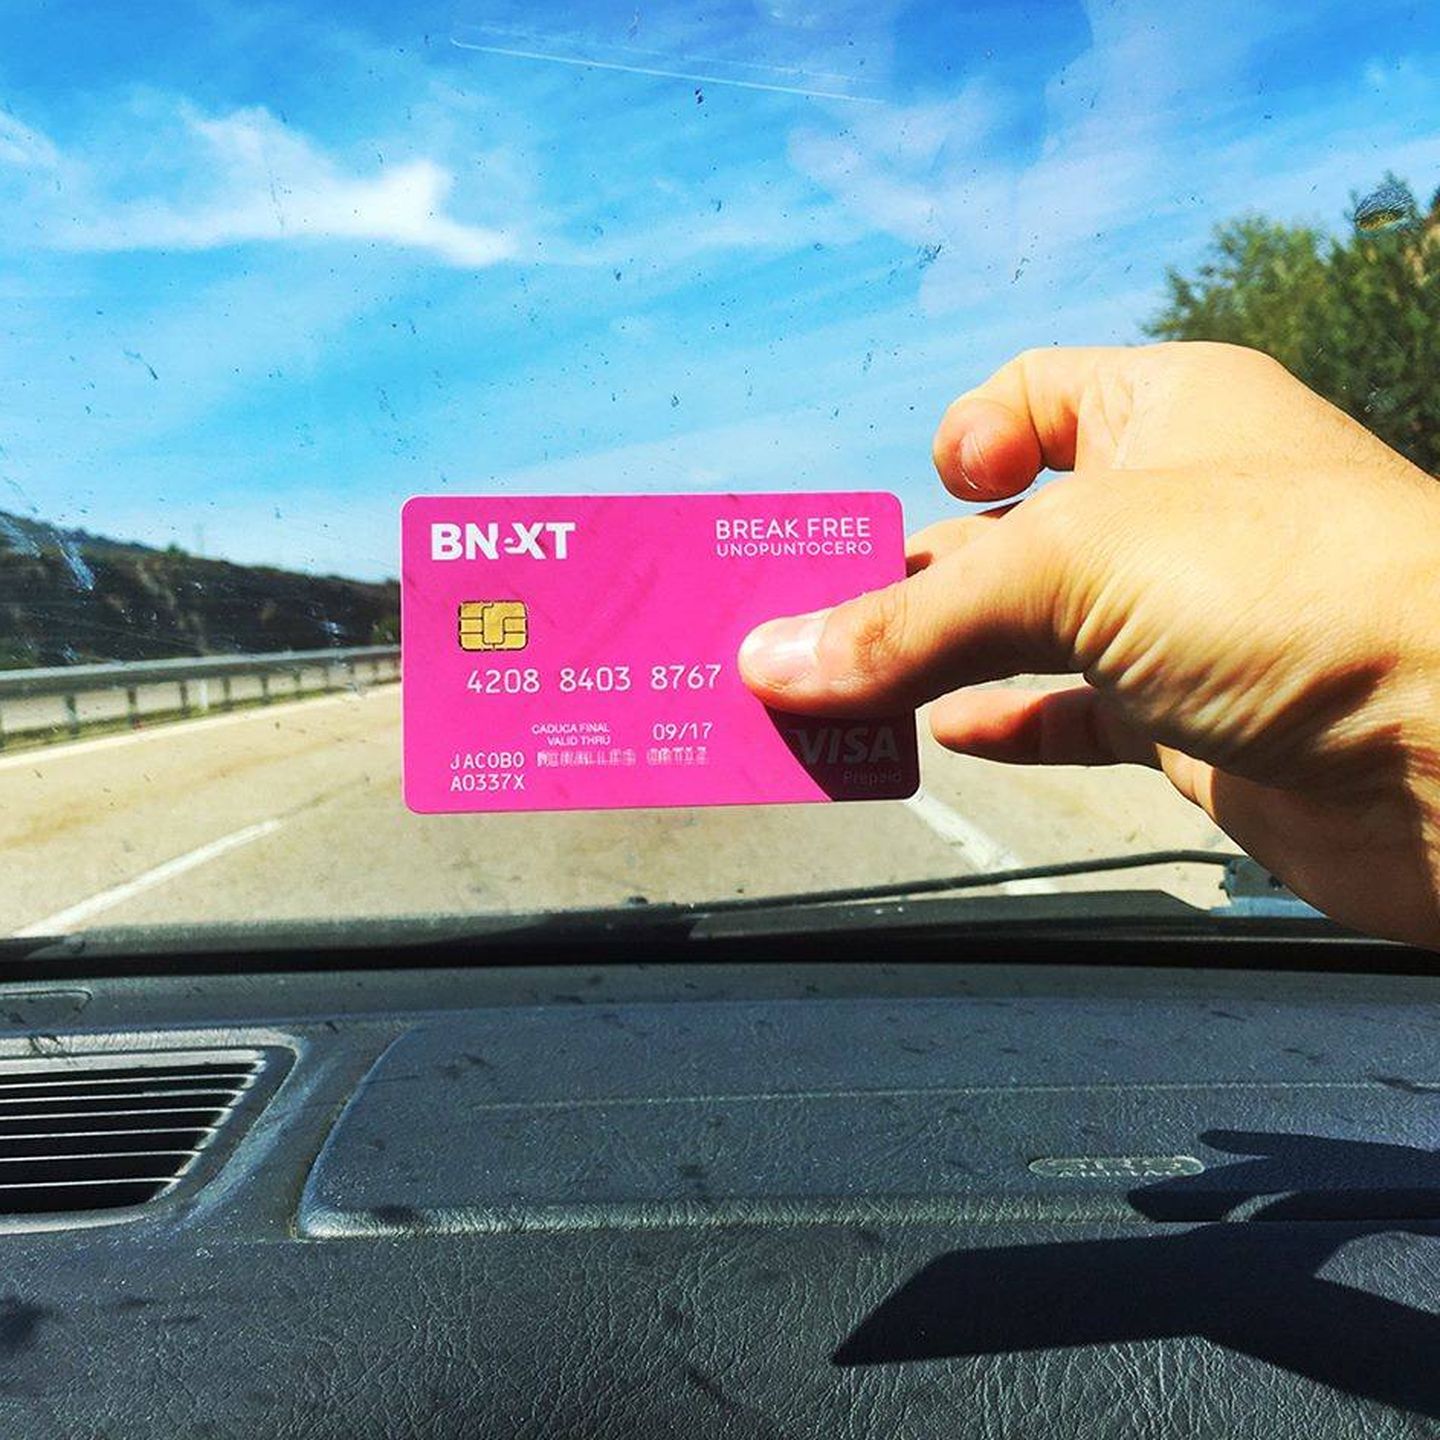 La tarjeta visa Bnext destaca por su llamativo color rosa. (Bnext/Facebook)